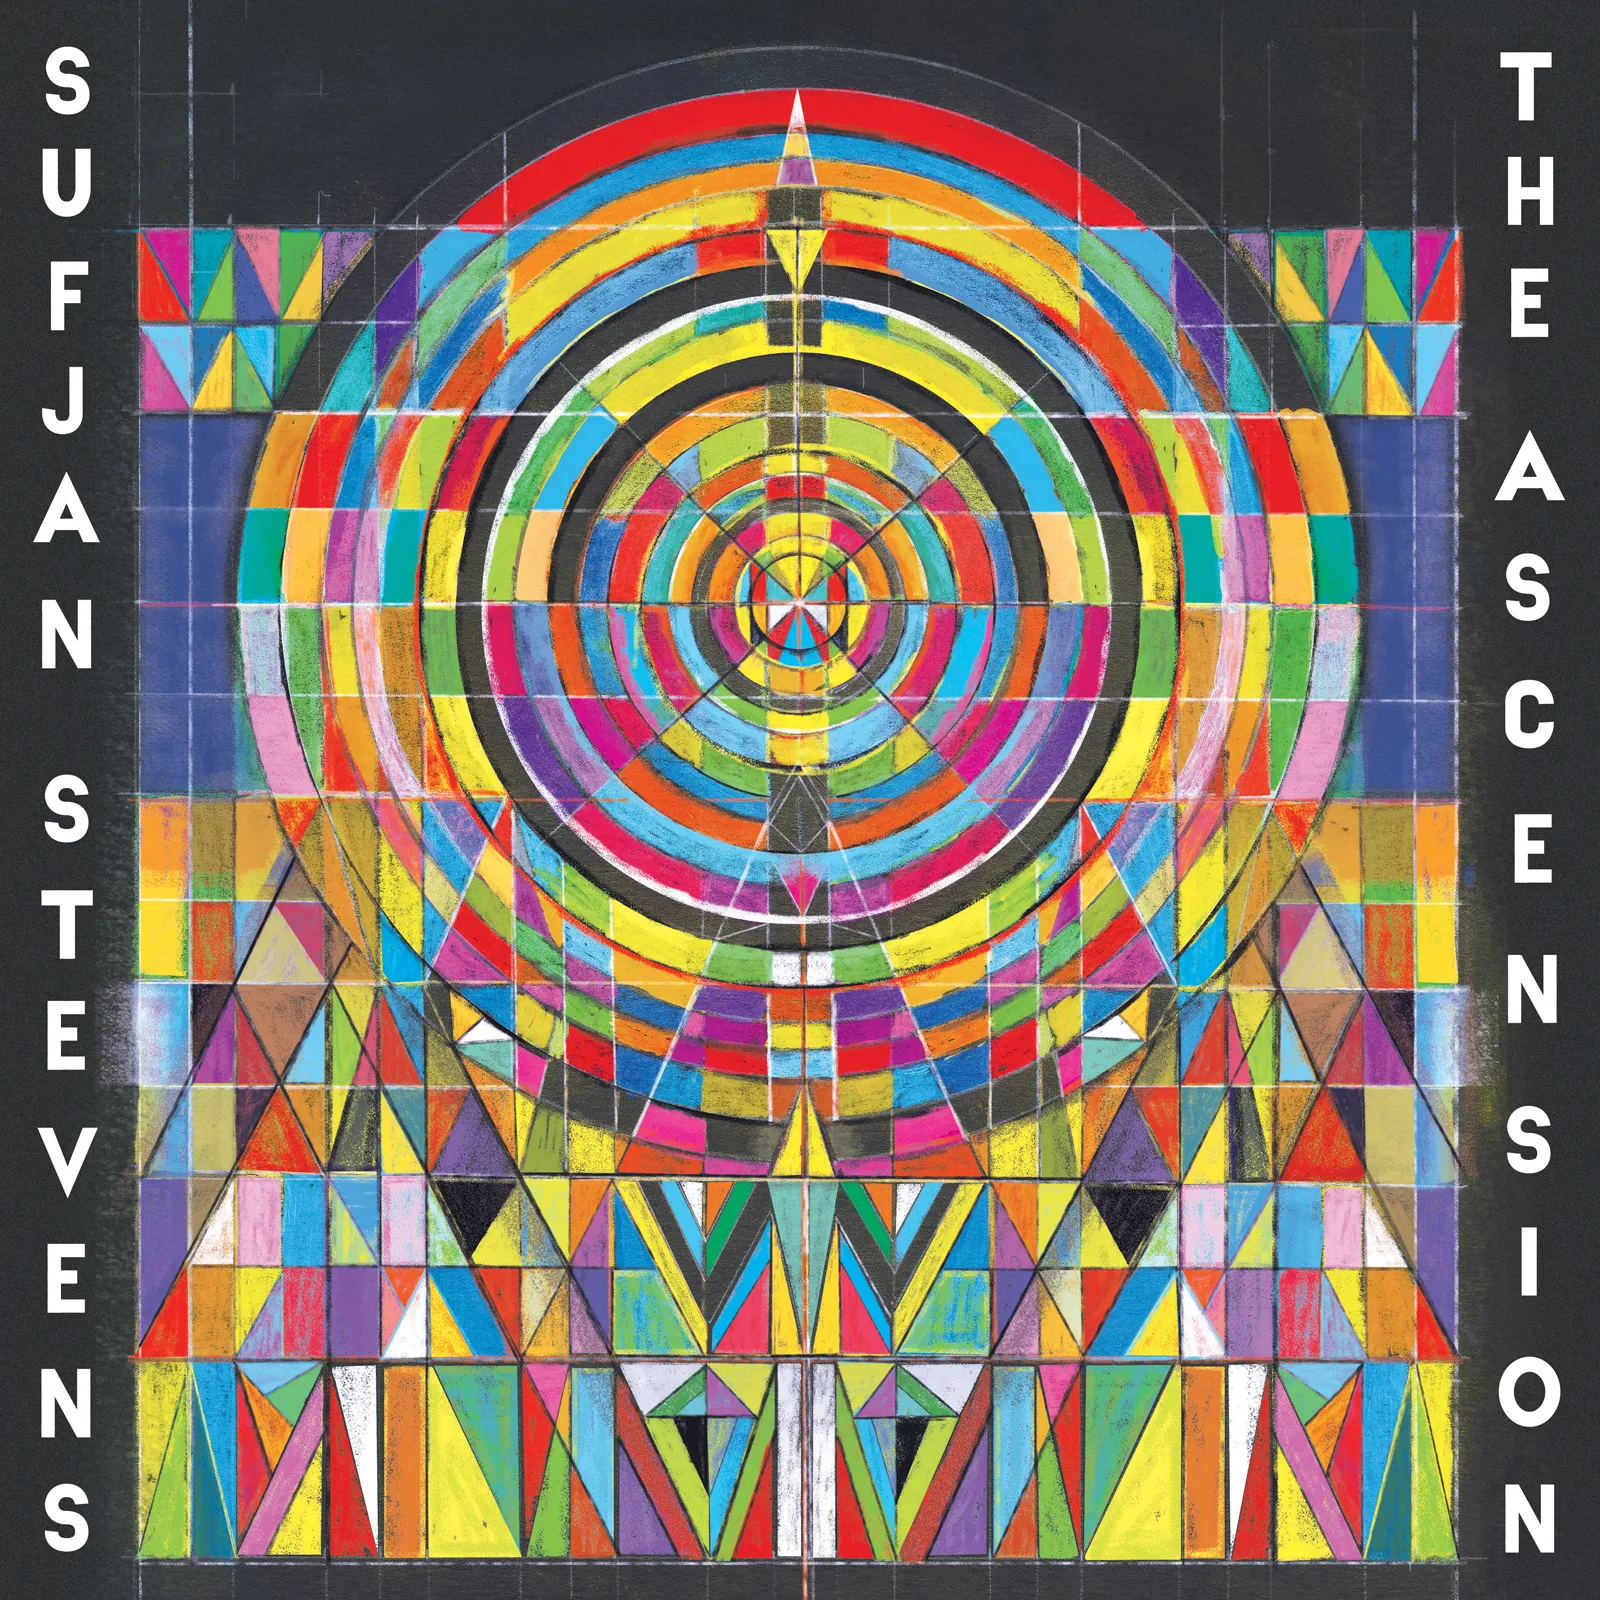 <strong>Sufjan Stevens - The Ascension</strong> (Vinyl LP - clear)